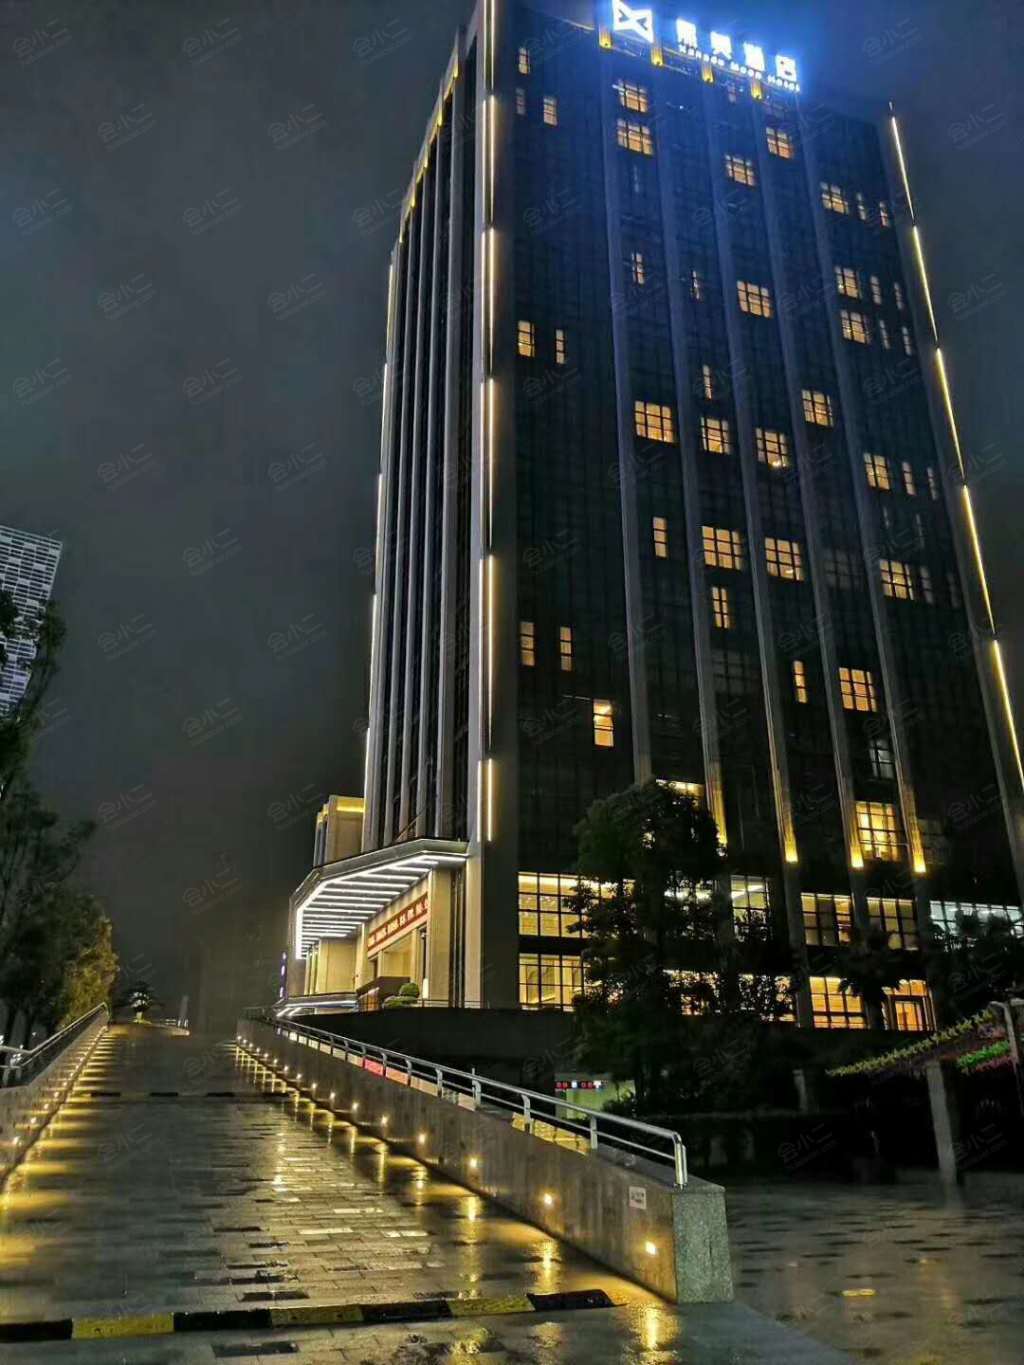 重庆熙美酒店地址图片